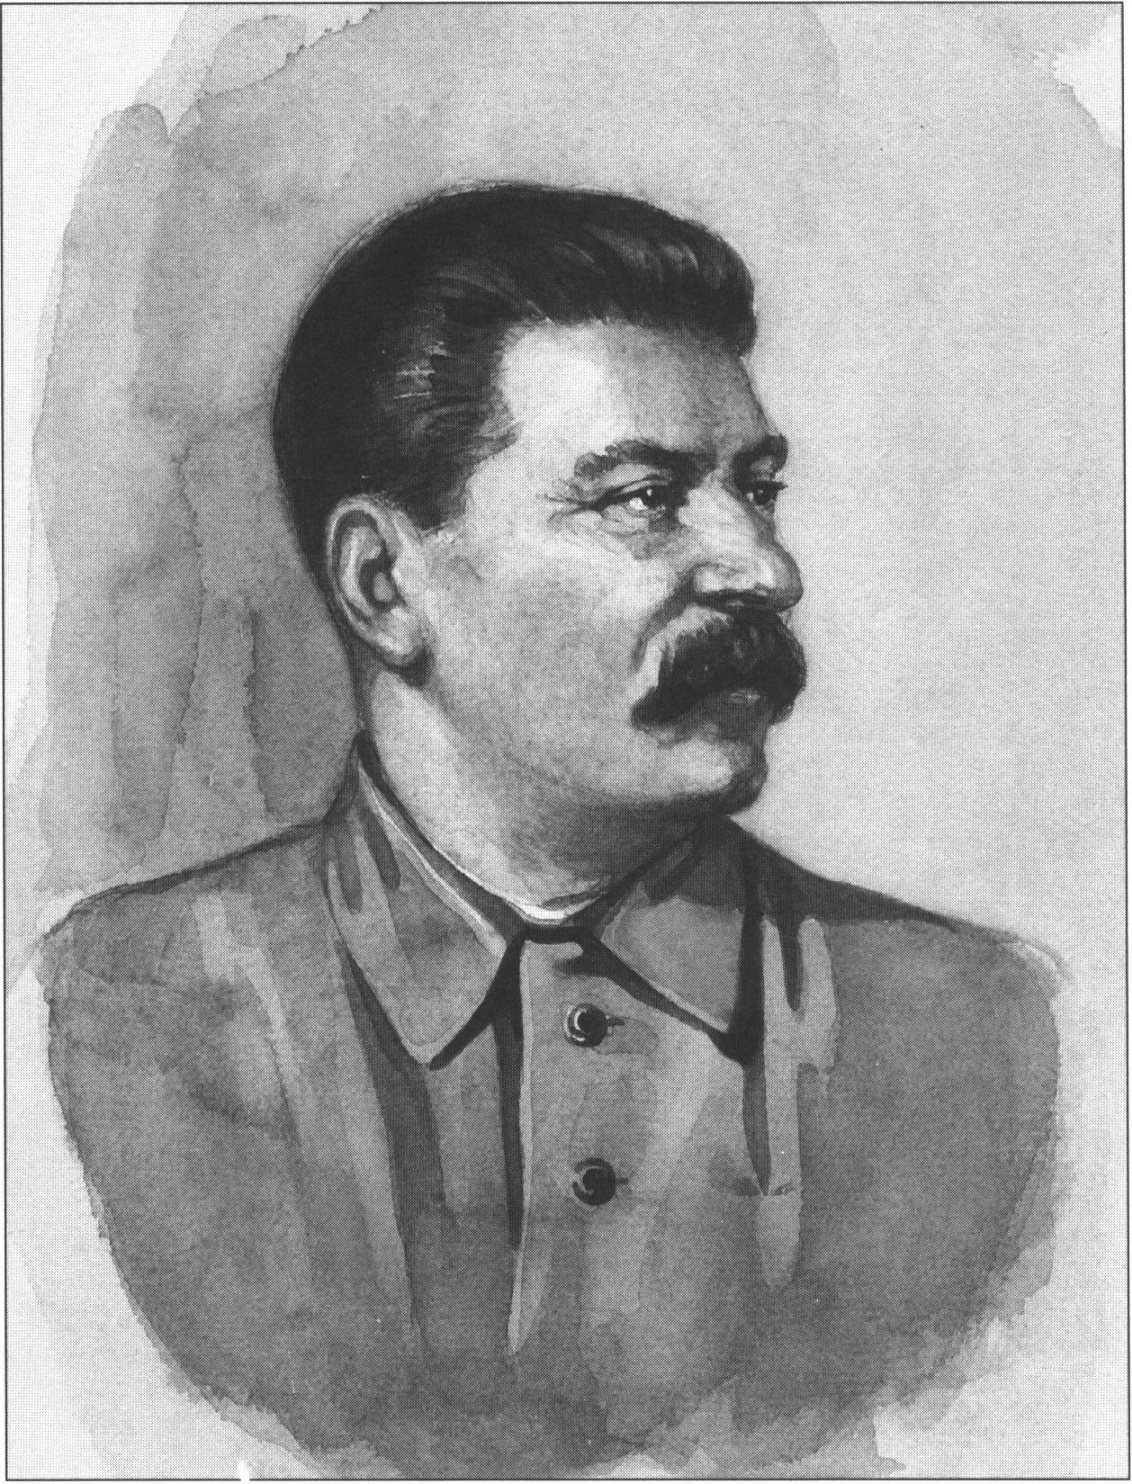 И.В. Сталин (1878—1953). Акварель неизвестного художника. 1940-е гг. Из фондов АДПМЗ